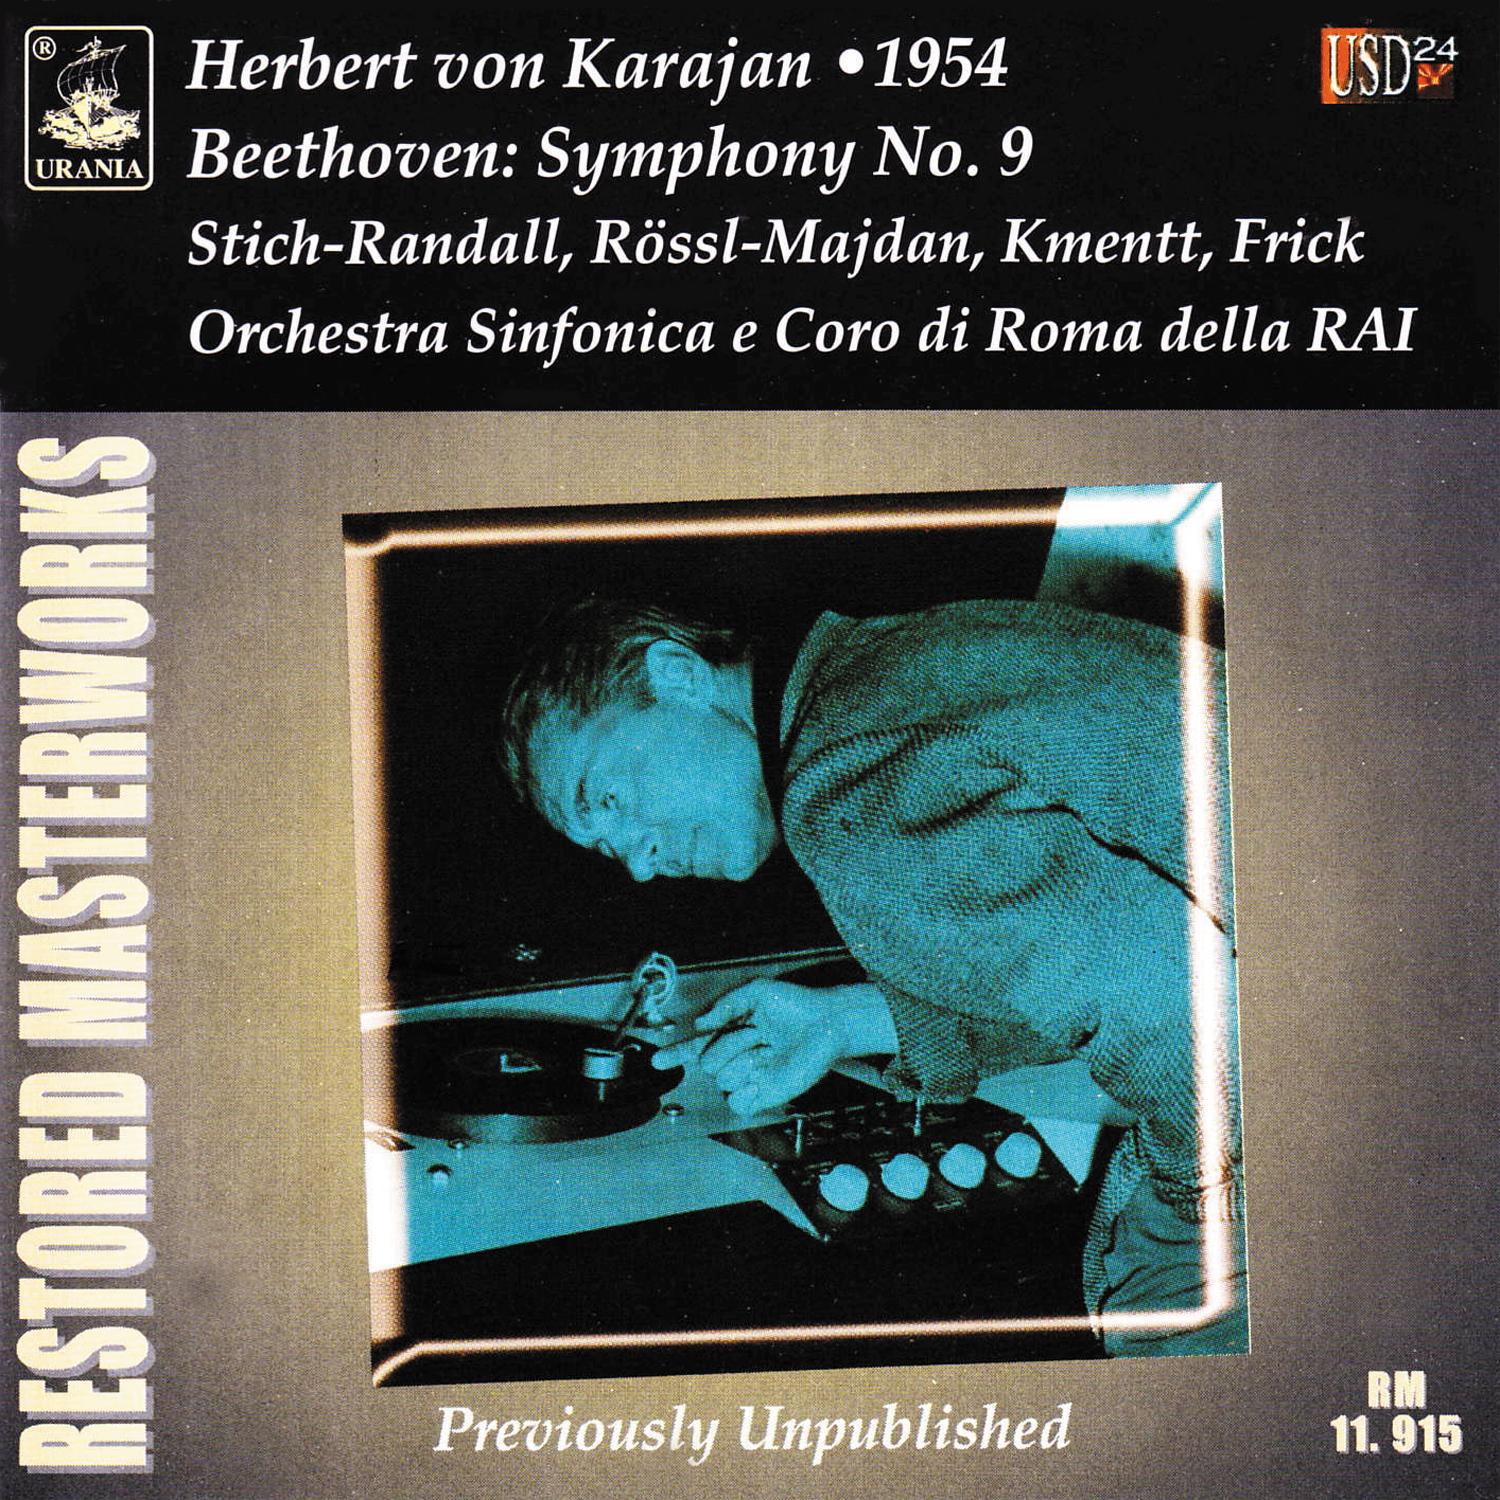 Karajan Conducts Beethoven: Symphony No. 9